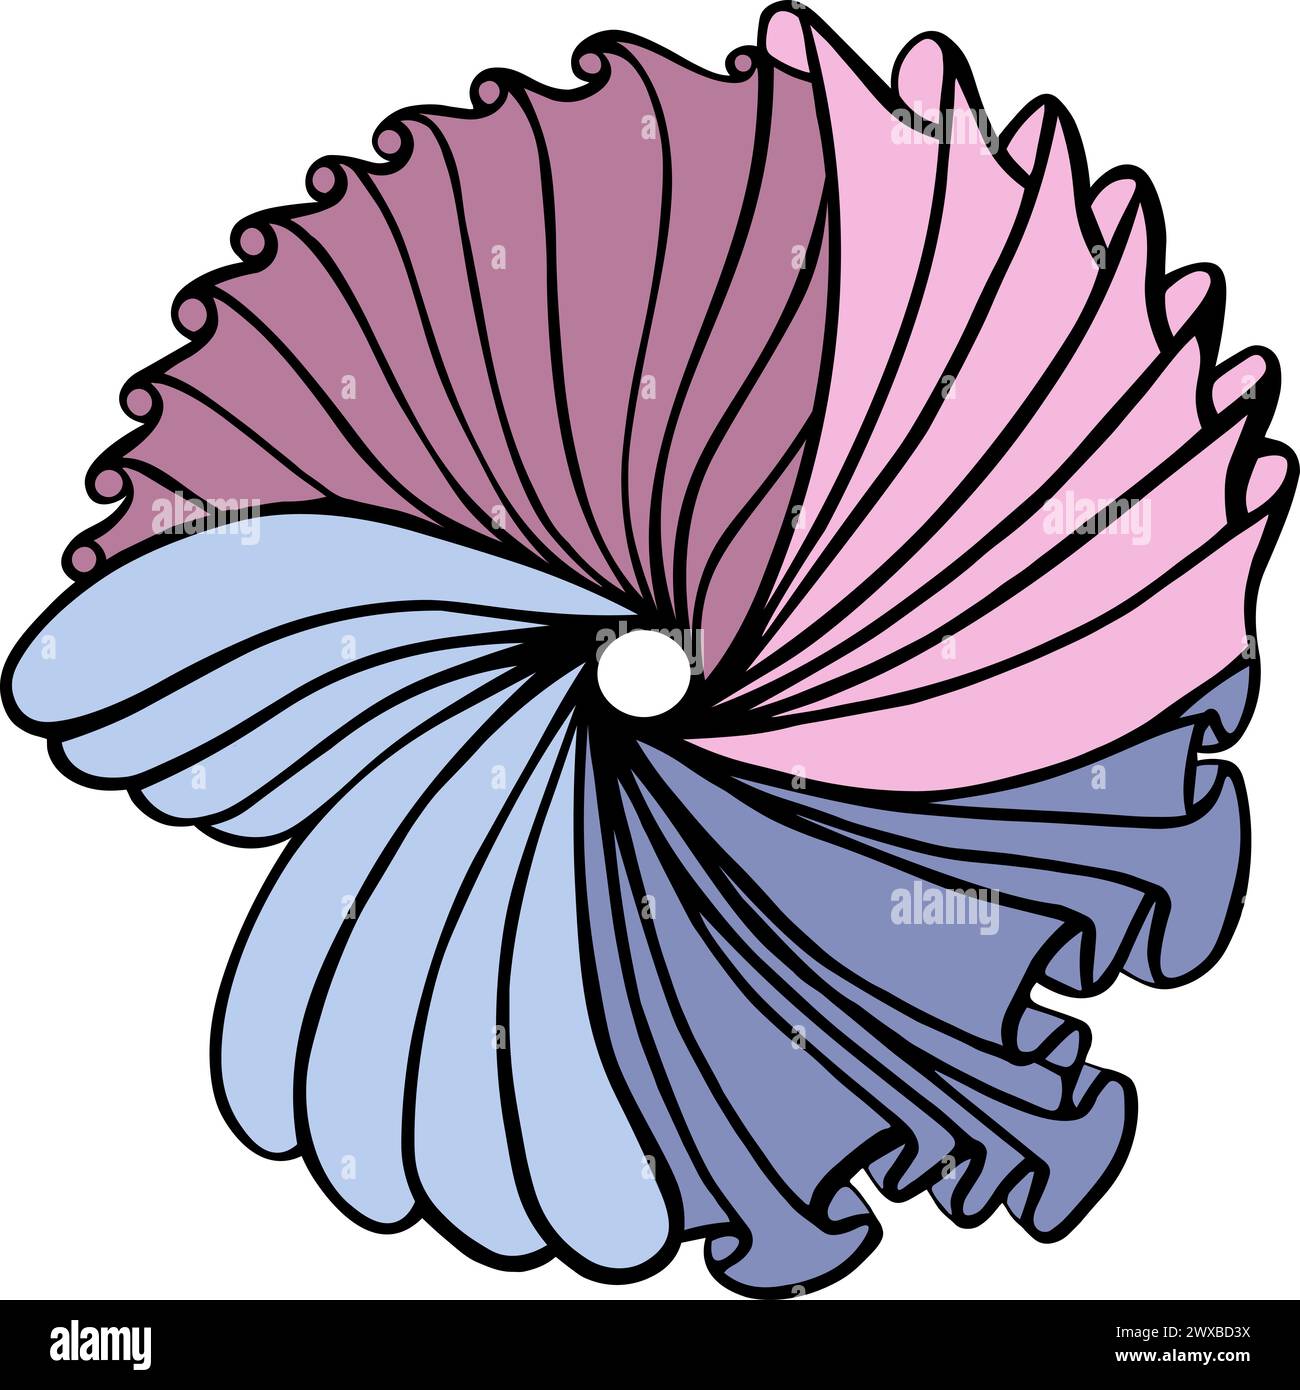 L'immagine raffigura una farfalla stilizzata o una falena. Le ali sono composte da segmenti ricurvi sovrapposti in tonalità di rosa, viola e blu Foto Stock